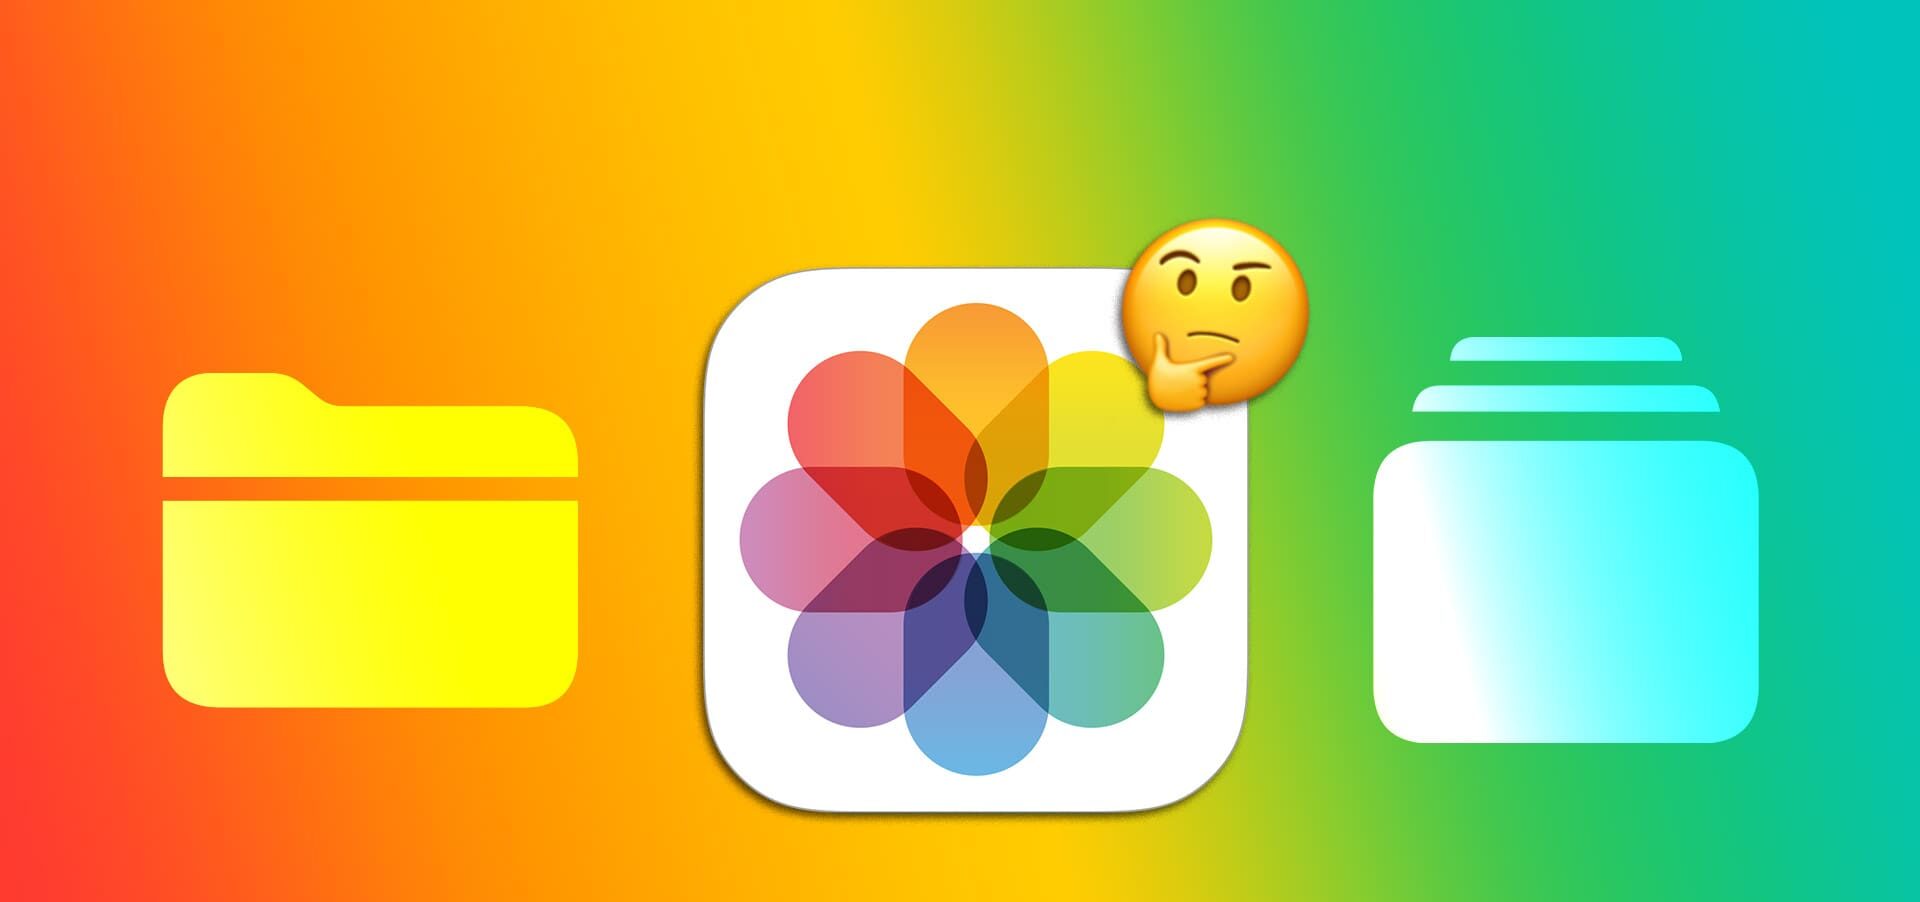 διαφορά μεταξύ άλμπουμ και φακέλου στην εφαρμογή Apple Photos στο iPhone